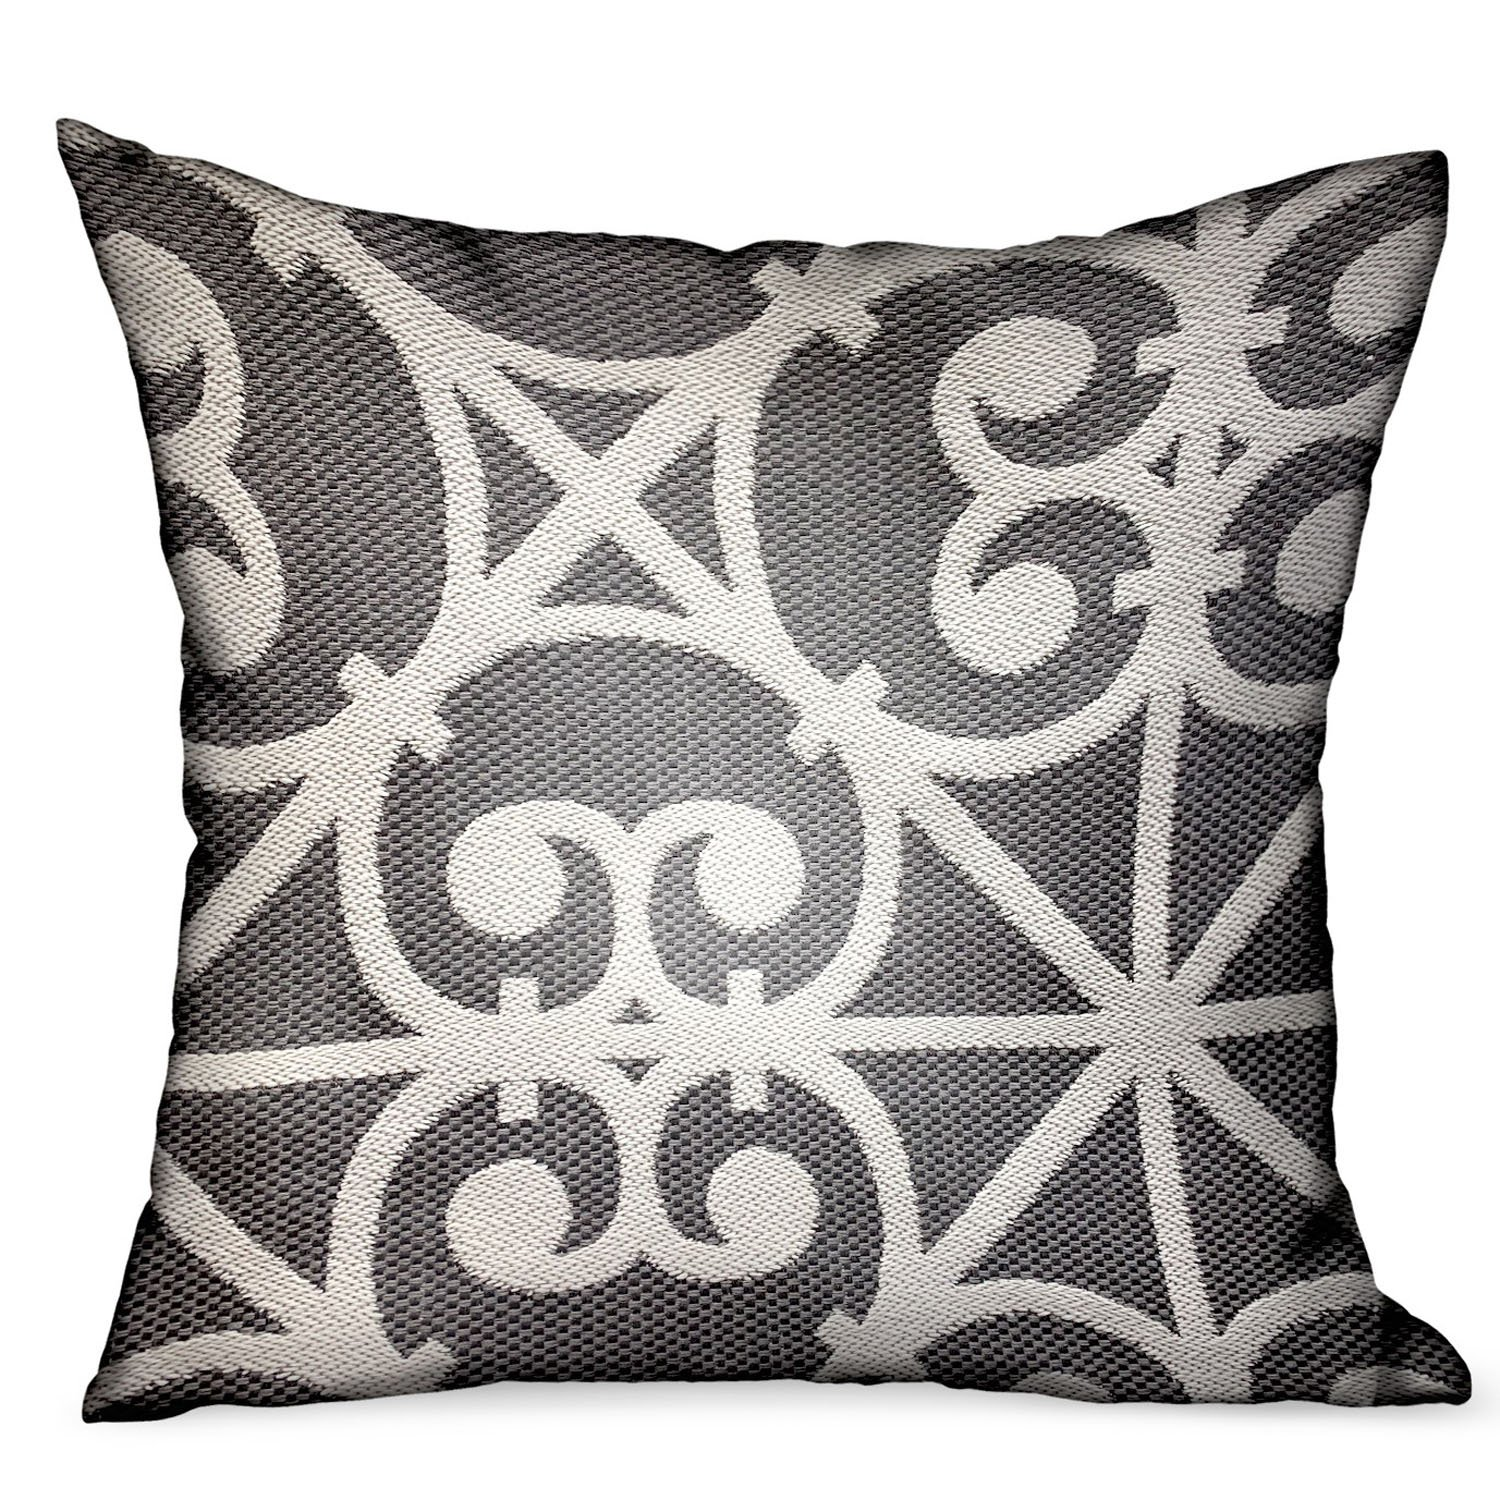 Grey - Artisanal Design Olefin Luxury Outdoor/Indoor Throw Pillow